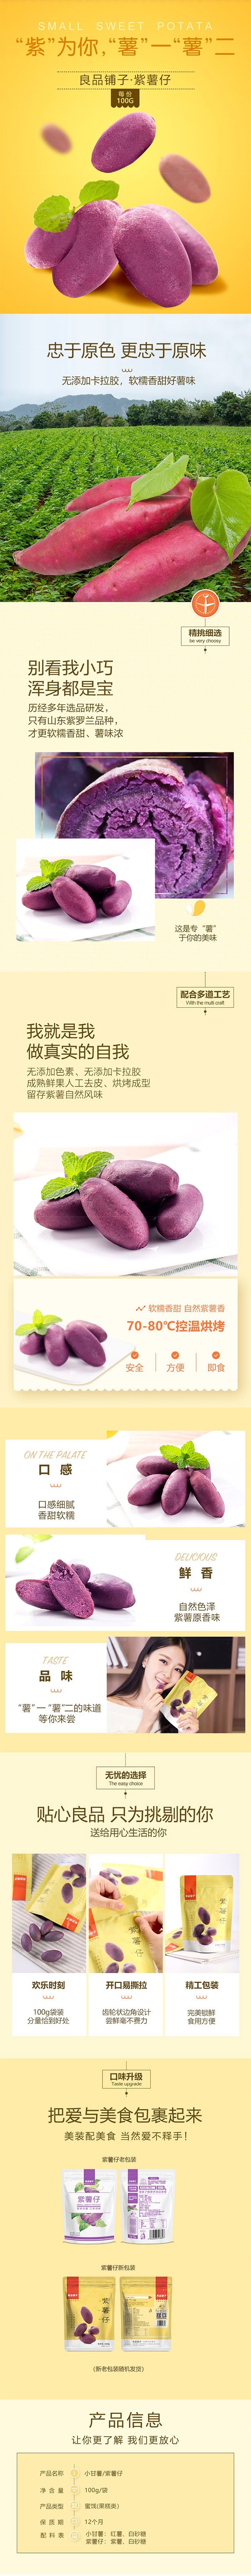 [中国直邮] BESTORE 良品铺子紫薯仔番薯地瓜早餐零食100g